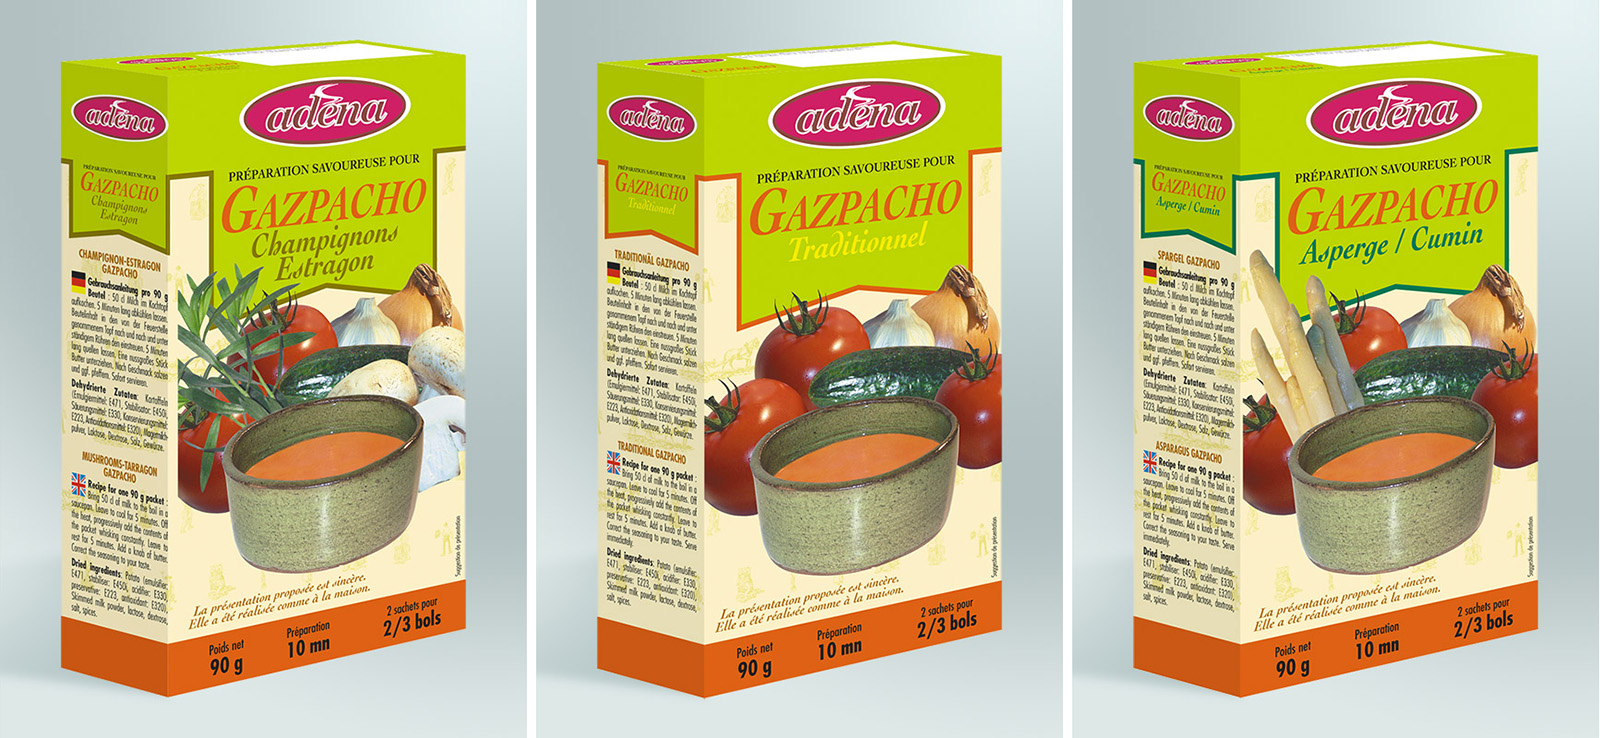 Packaging Gazpacho